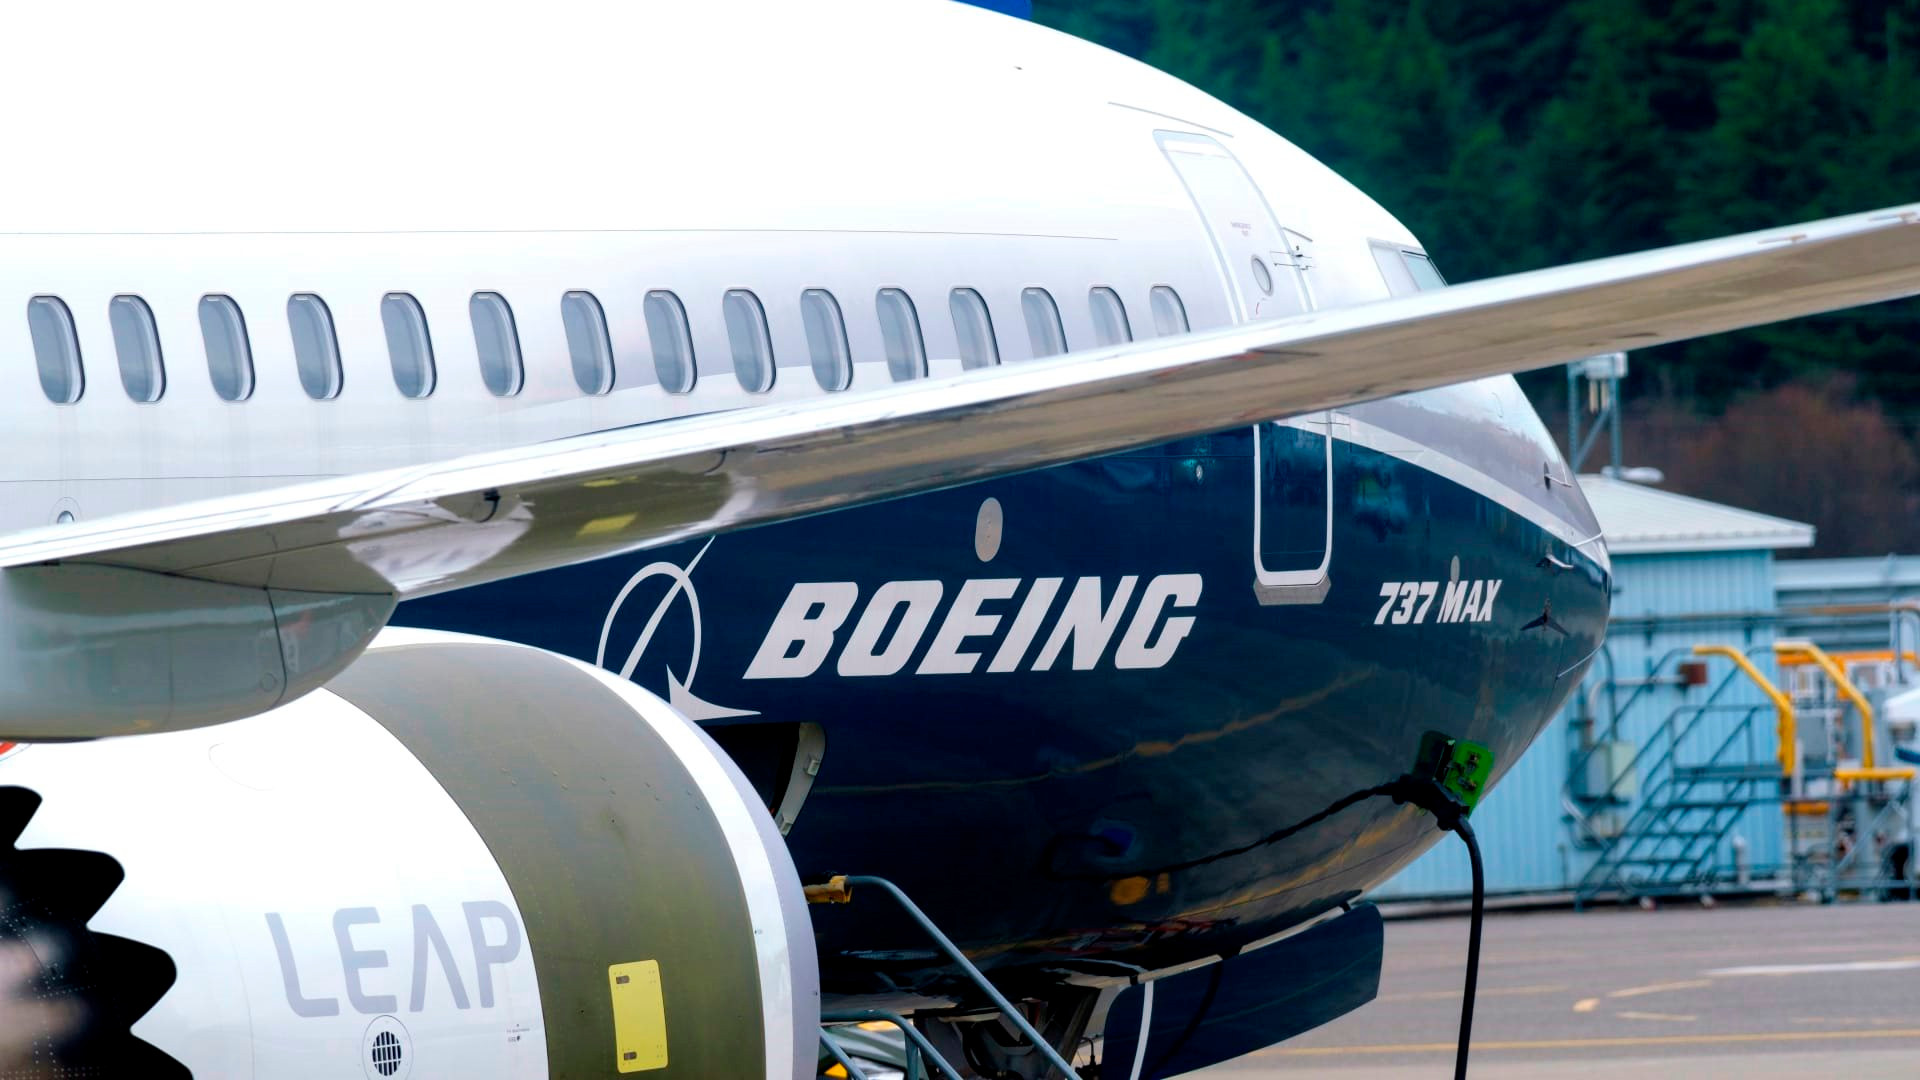 Phó Chủ tịch Boeing nêu 3 định hướng phát triển tại Việt Nam, một trong số đó sẽ giúp nước ta bước vào ‘sân chơi’ hàng không toàn cầu - Ảnh 1.